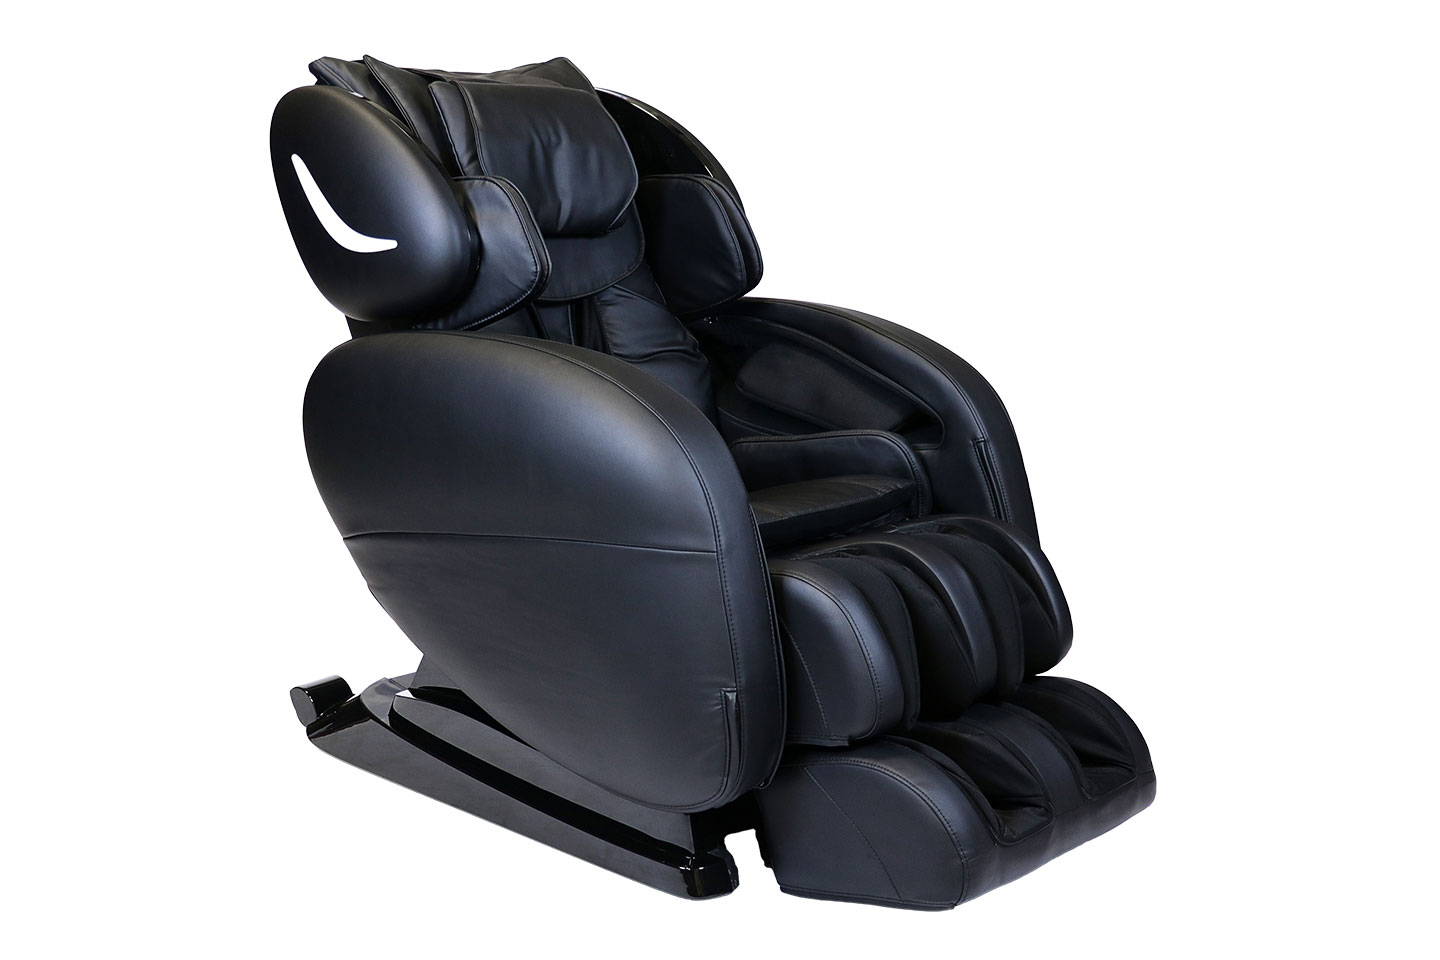 Smart Chair X3 3D/4D Massage Chair